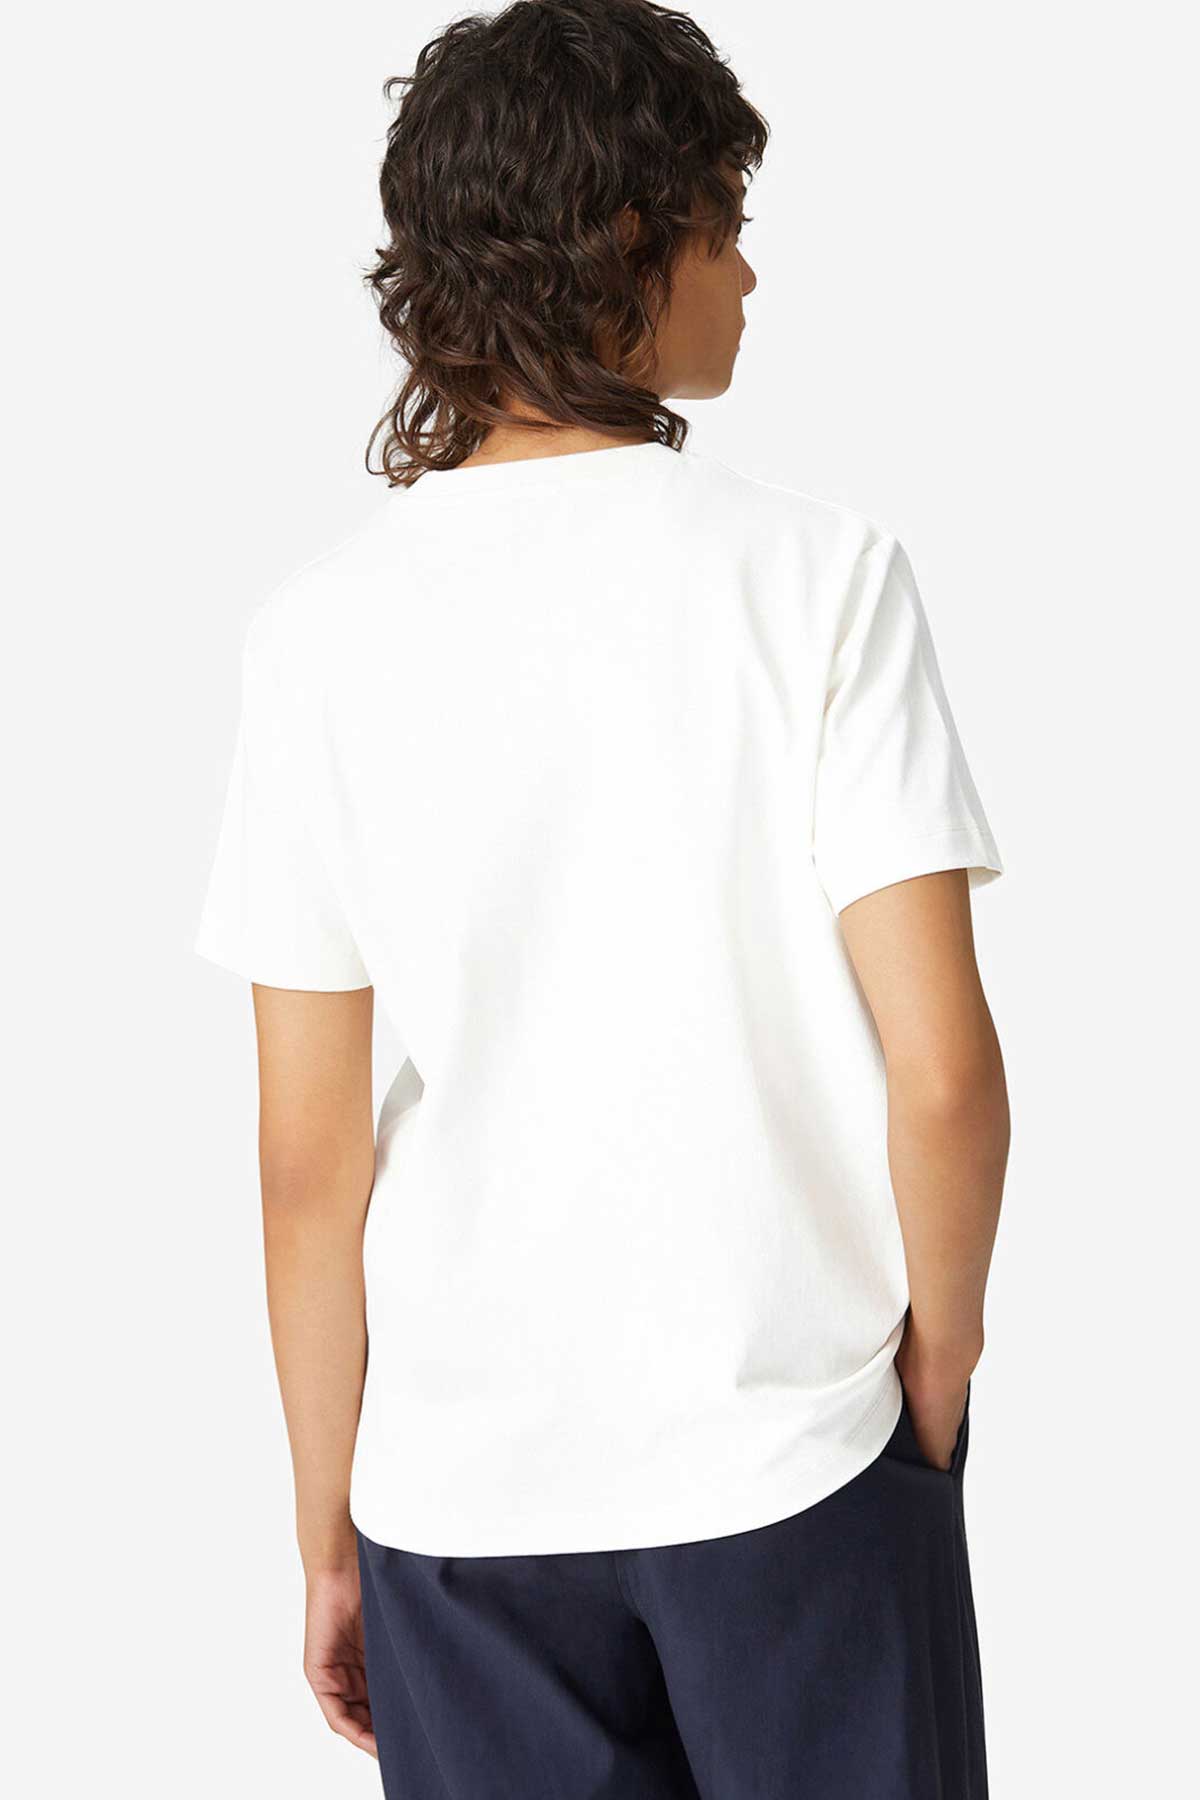 Kenzo Kaplan Logolu Bol Kesim T-shirt-Libas Trendy Fashion Store